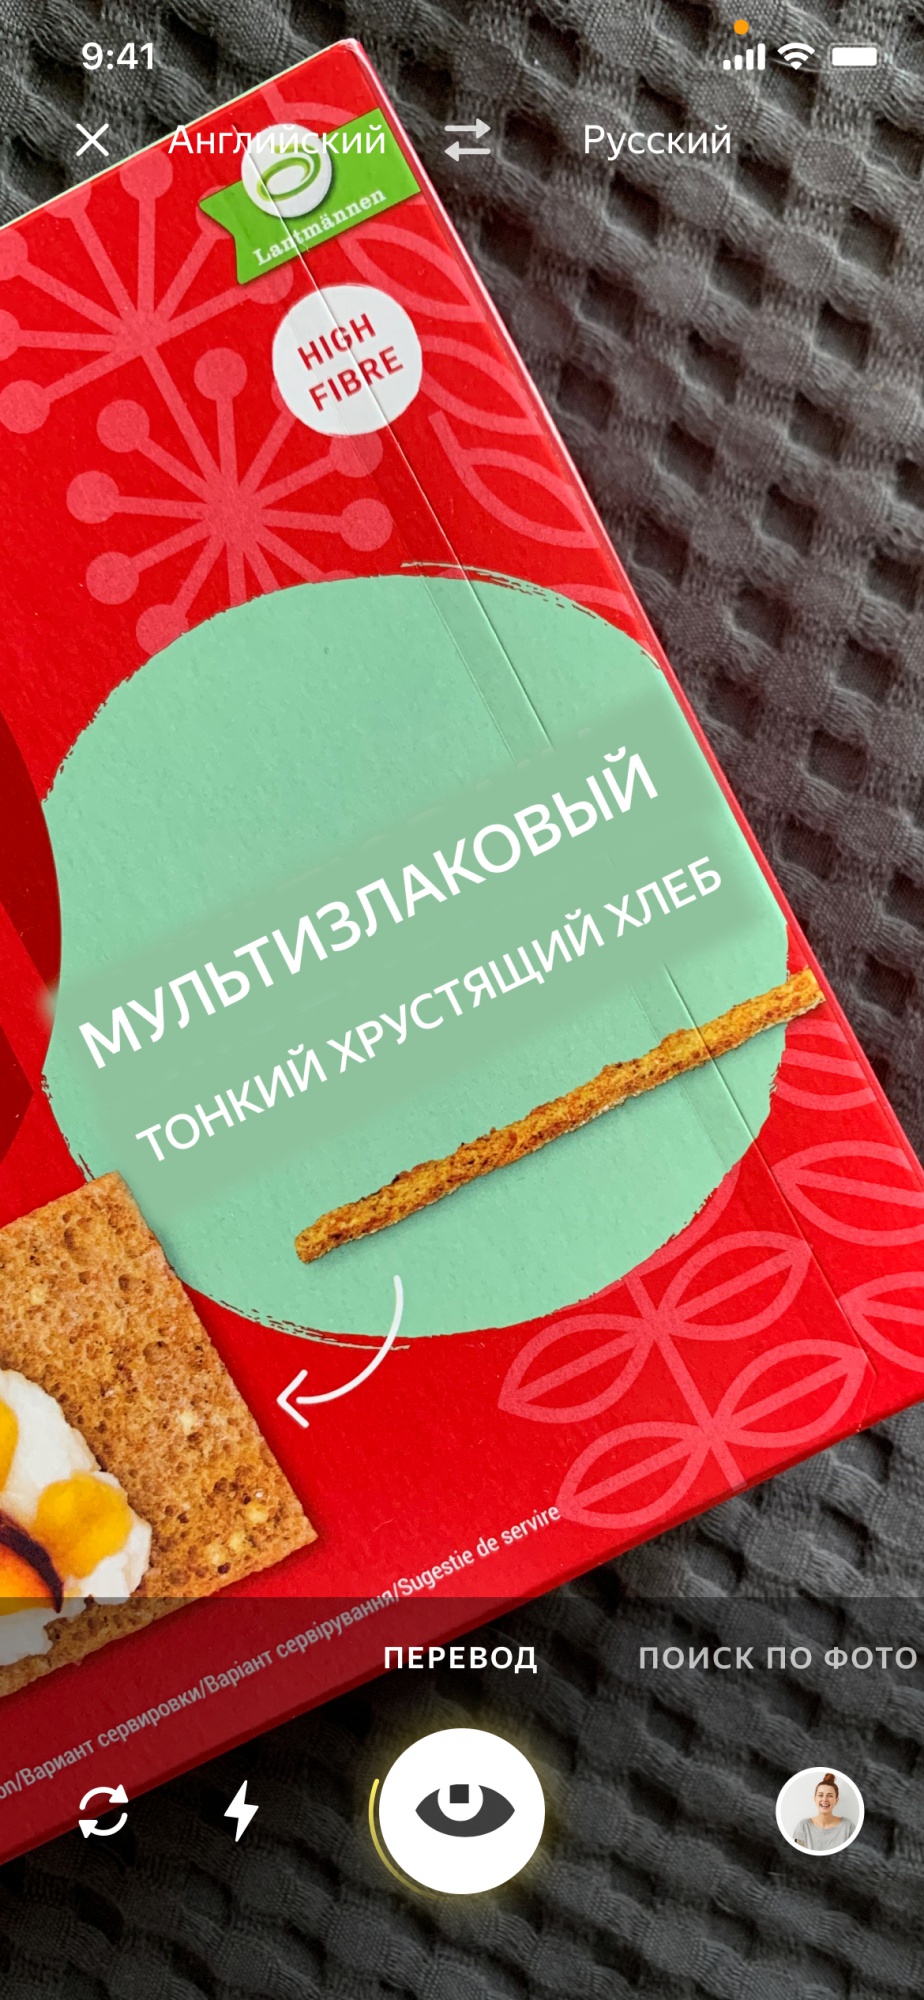 Яндекс запустил умную камеру в мобильном приложении